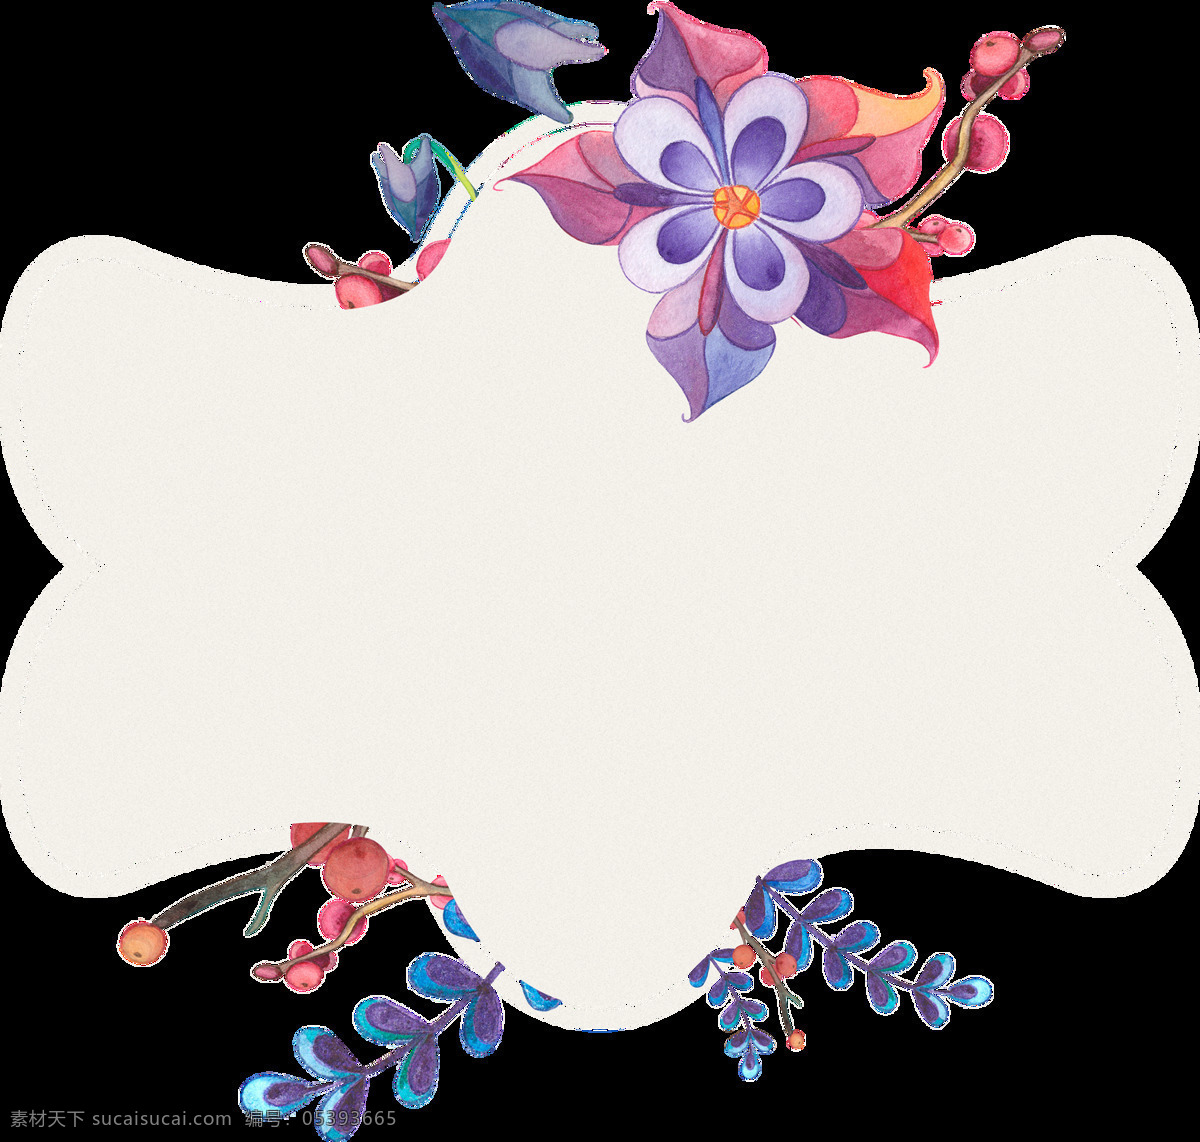 精美 花卉 边框 卡通 透明 合集 免 扣 白色 插画 粉色 红丝 蓝色 绿色 绿叶 手账素材 鲜花 叶片